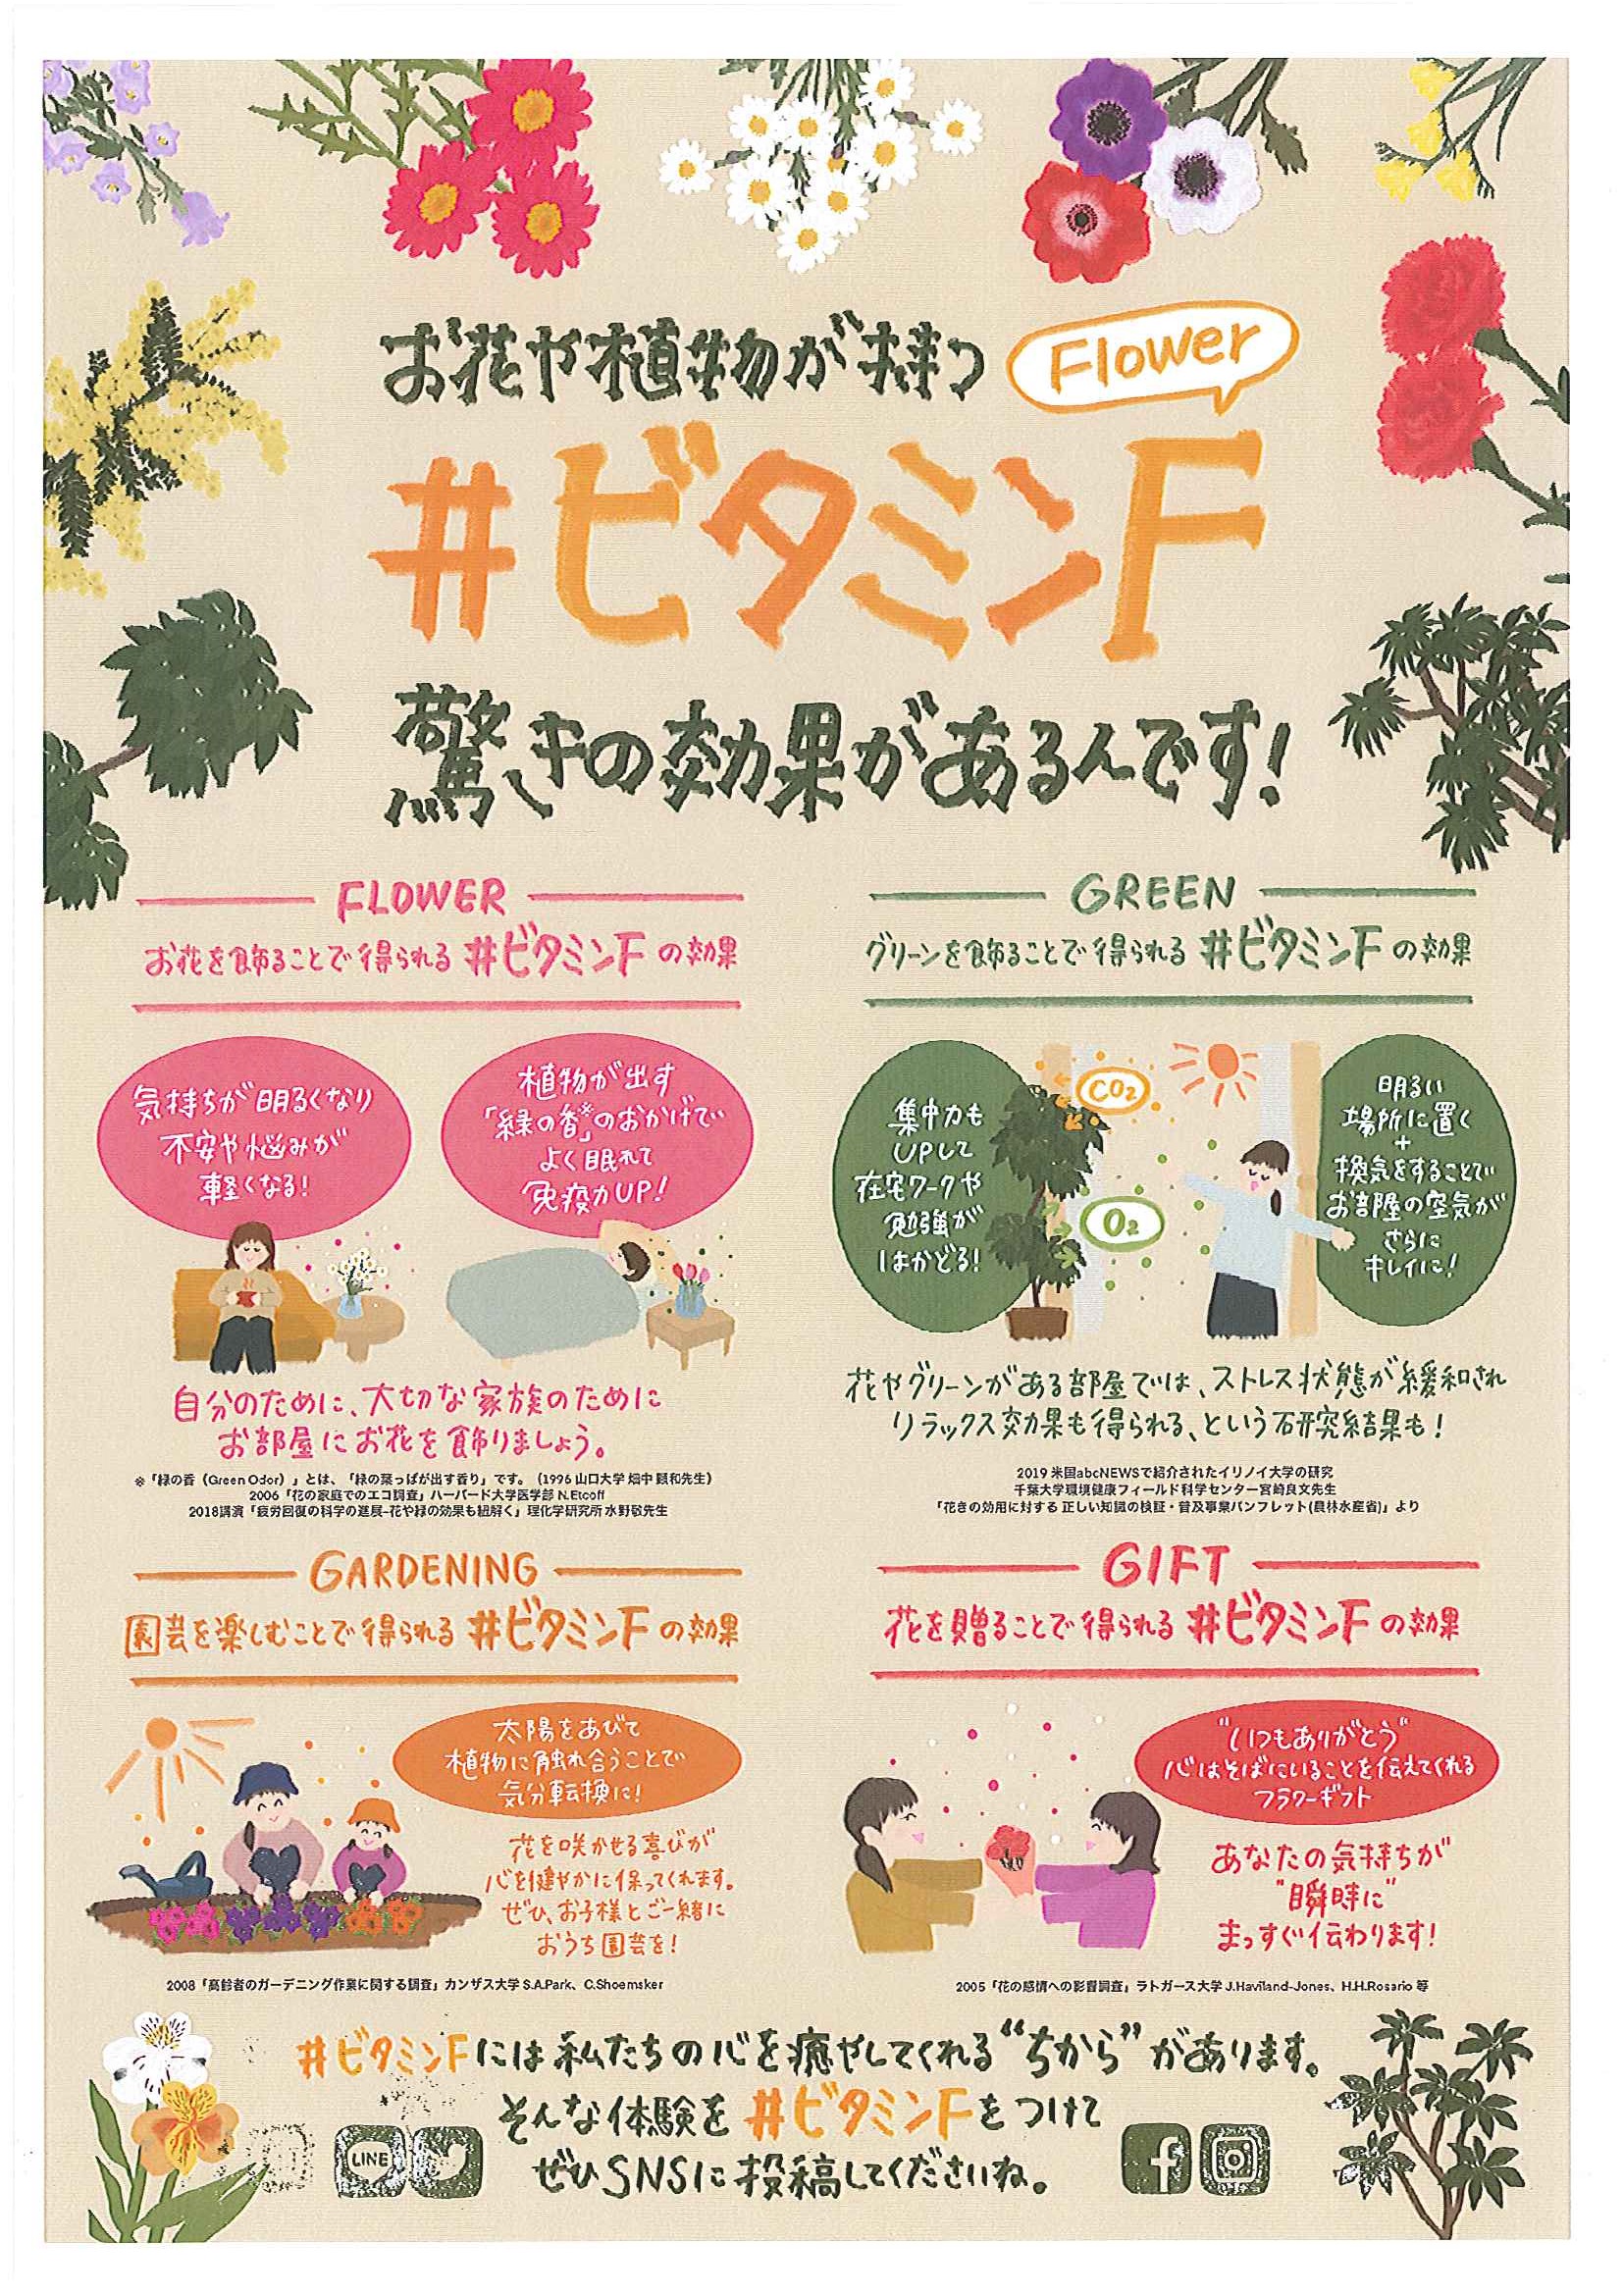 ビタミンｆ Flower ポスターのご案内 新潟中央卸売市場 株式会社 新花